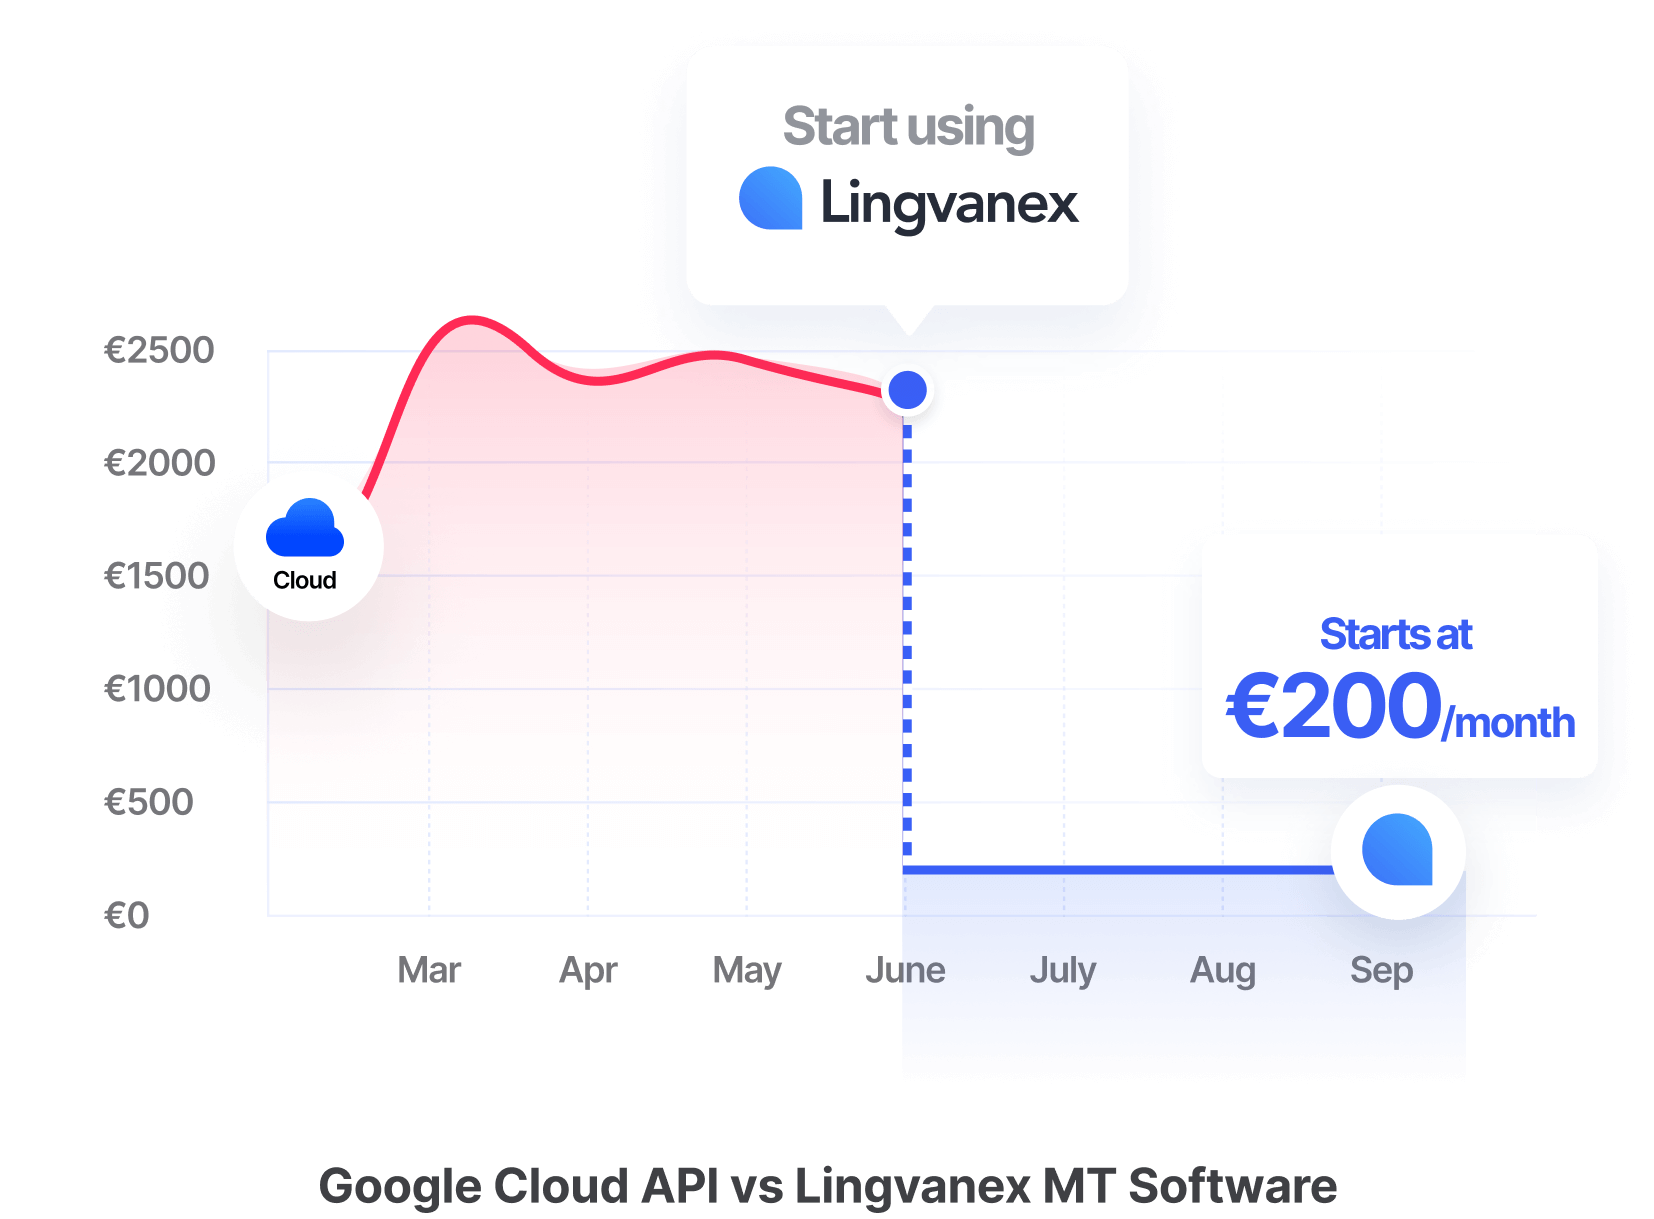 Google Cloud API vs Lingvanex MT Software